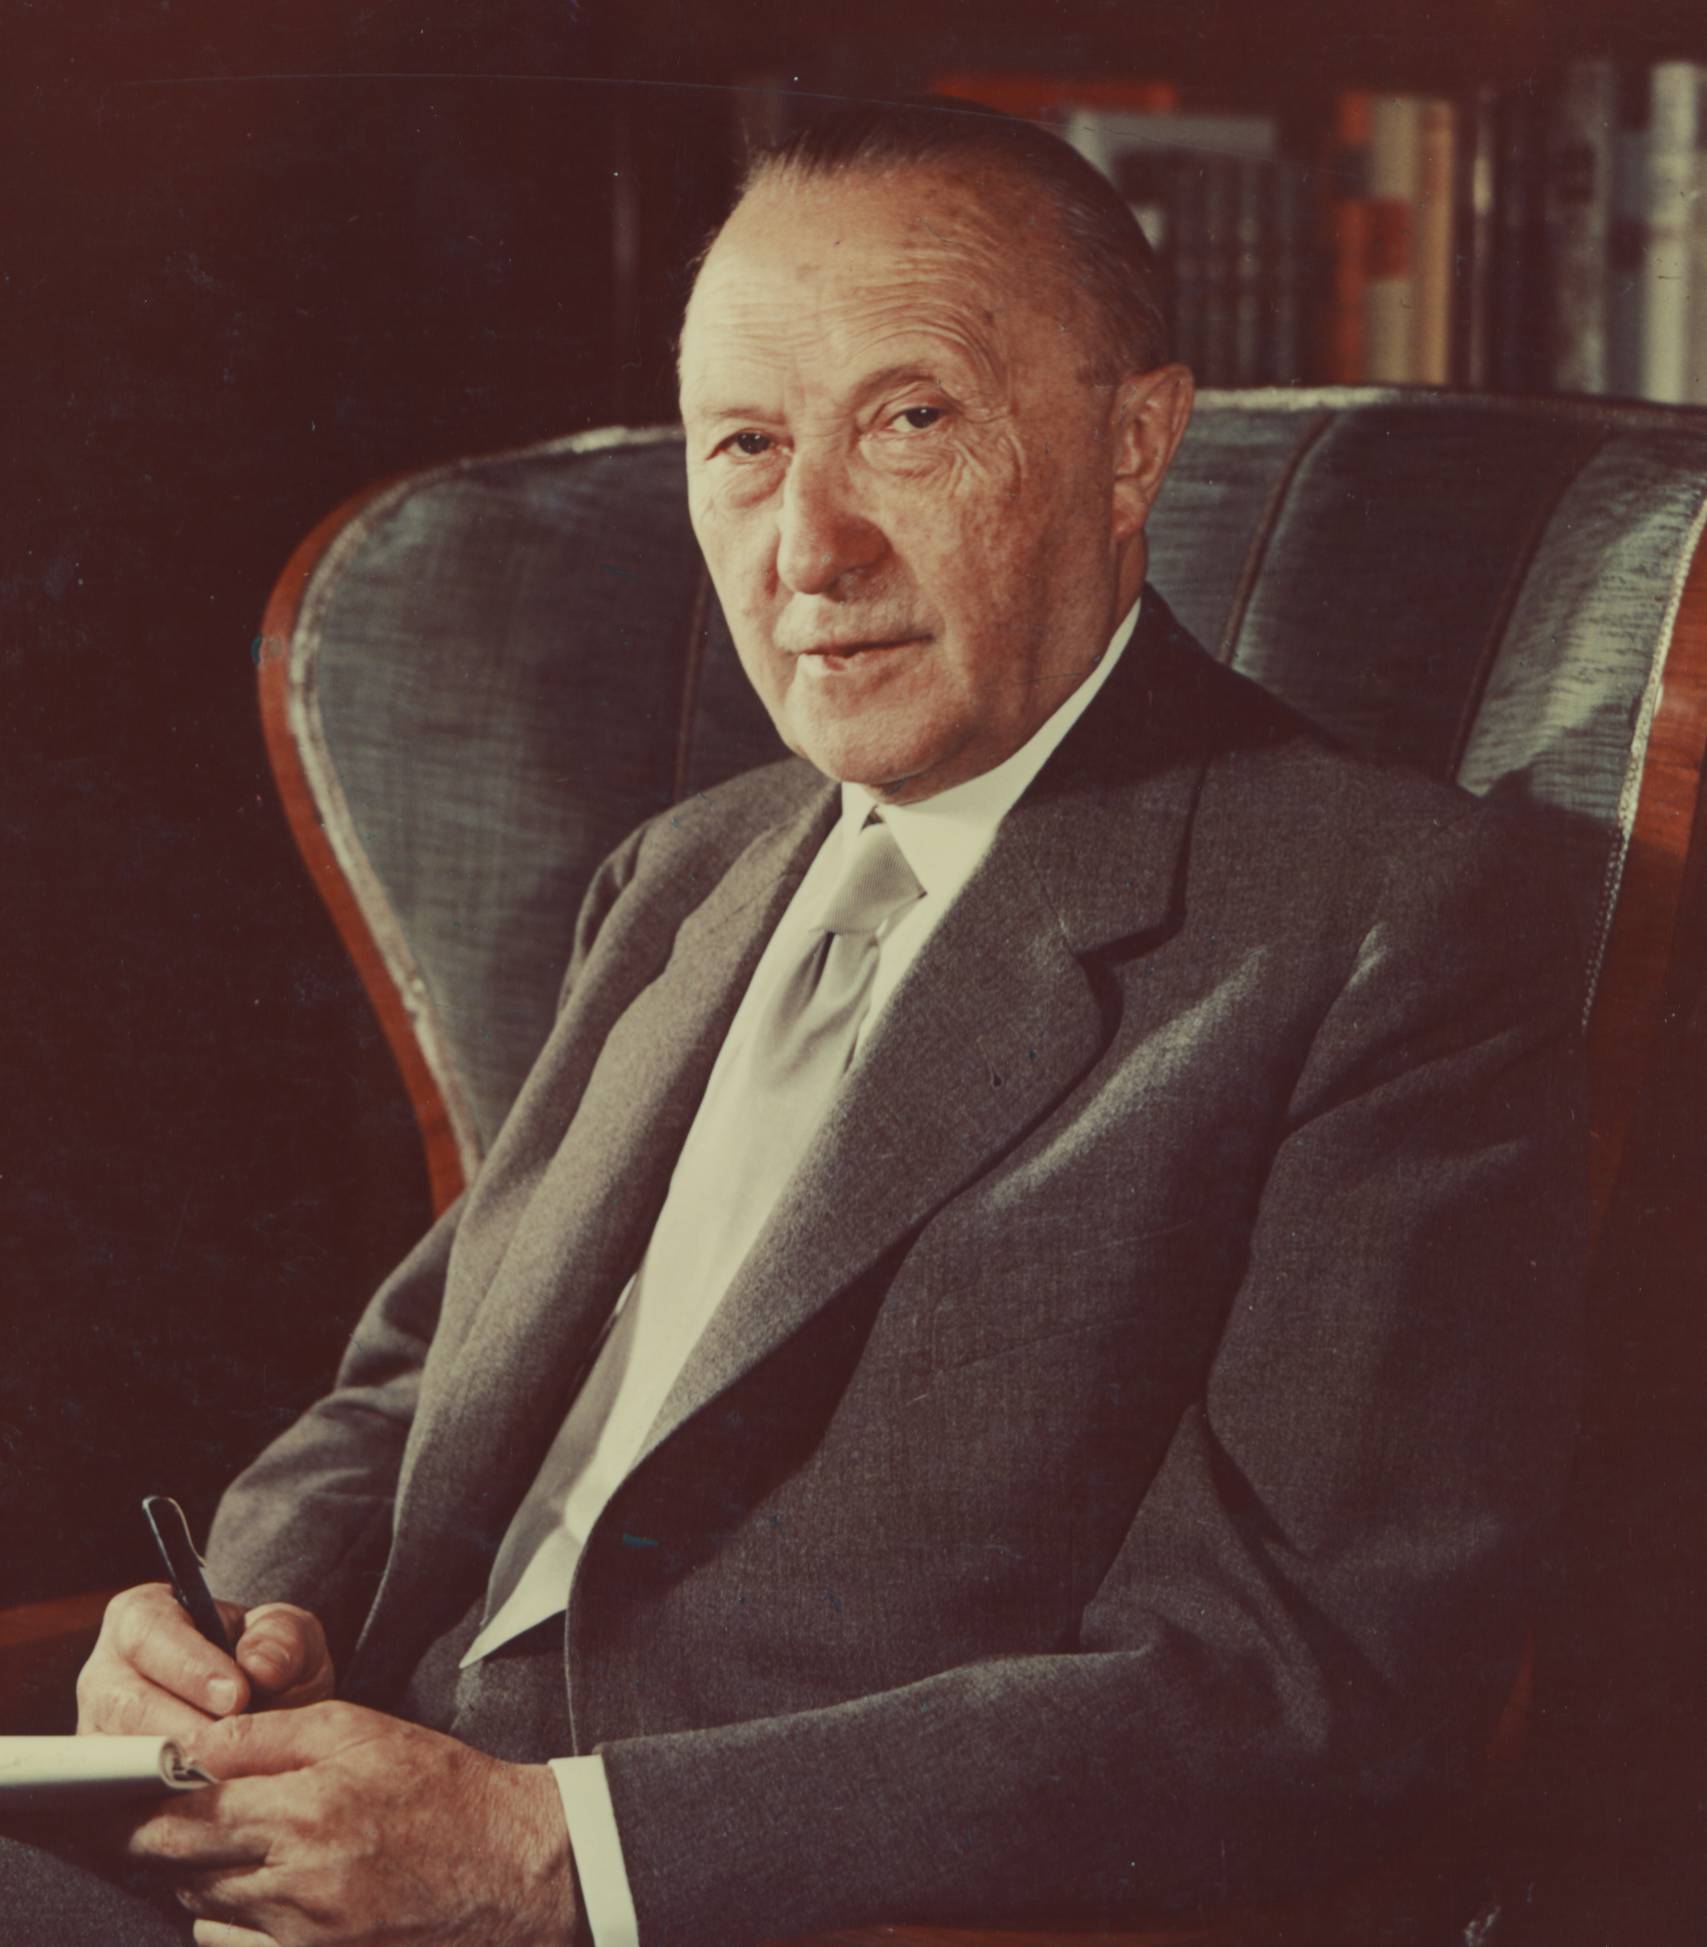 Portrait du futur chancelier de la RFA Konrad Adenauer, circa 1950 - source : WikiCommons